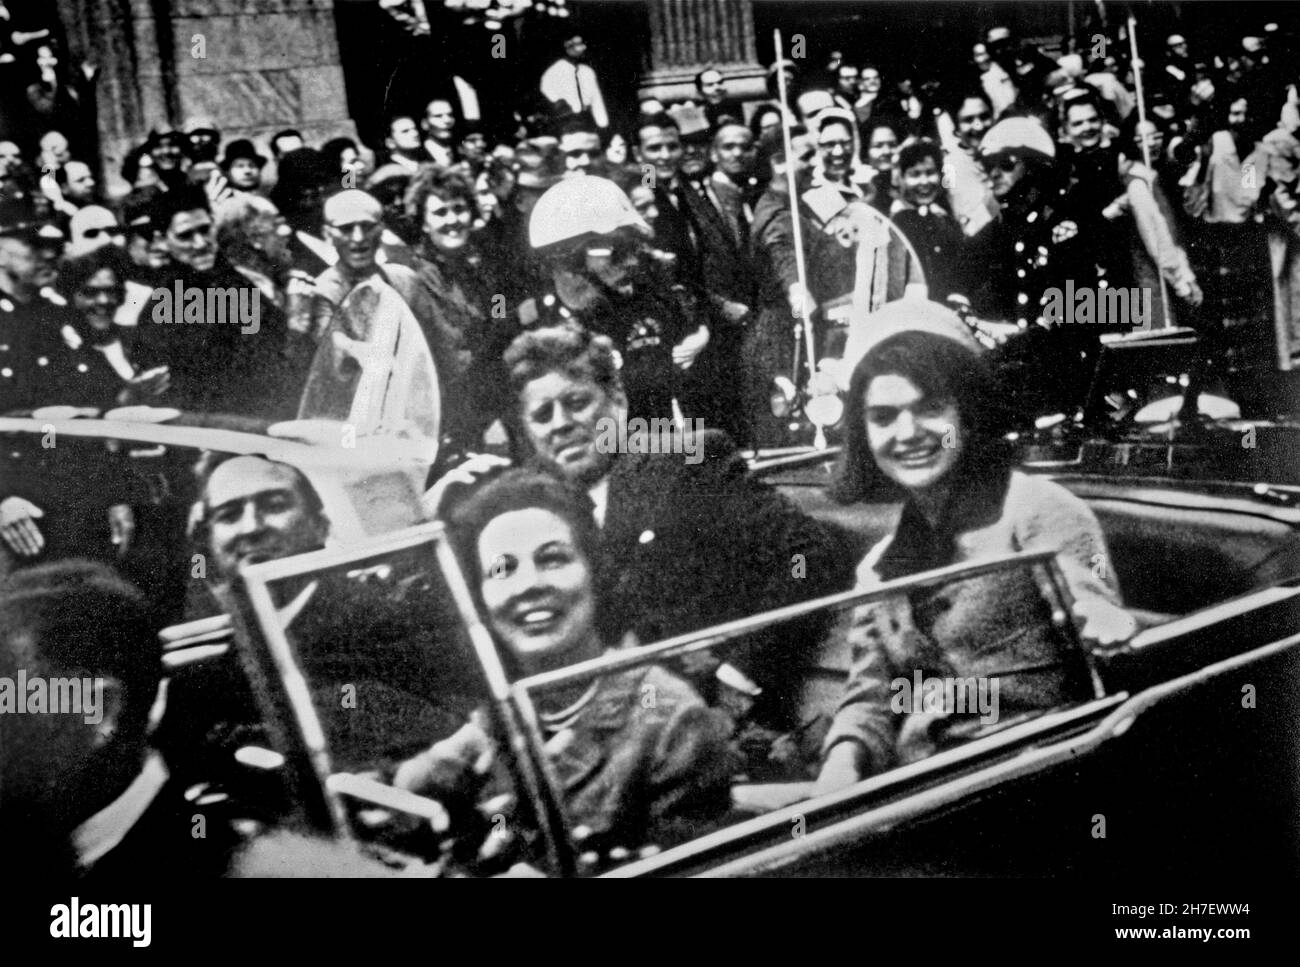 DALLAS, TEXAS, Stati Uniti d'America - 22 novembre 1963 - una delle ultime fotografie del motorade John F Kennedy, poco prima che fosse assassinato durante una visita Foto Stock